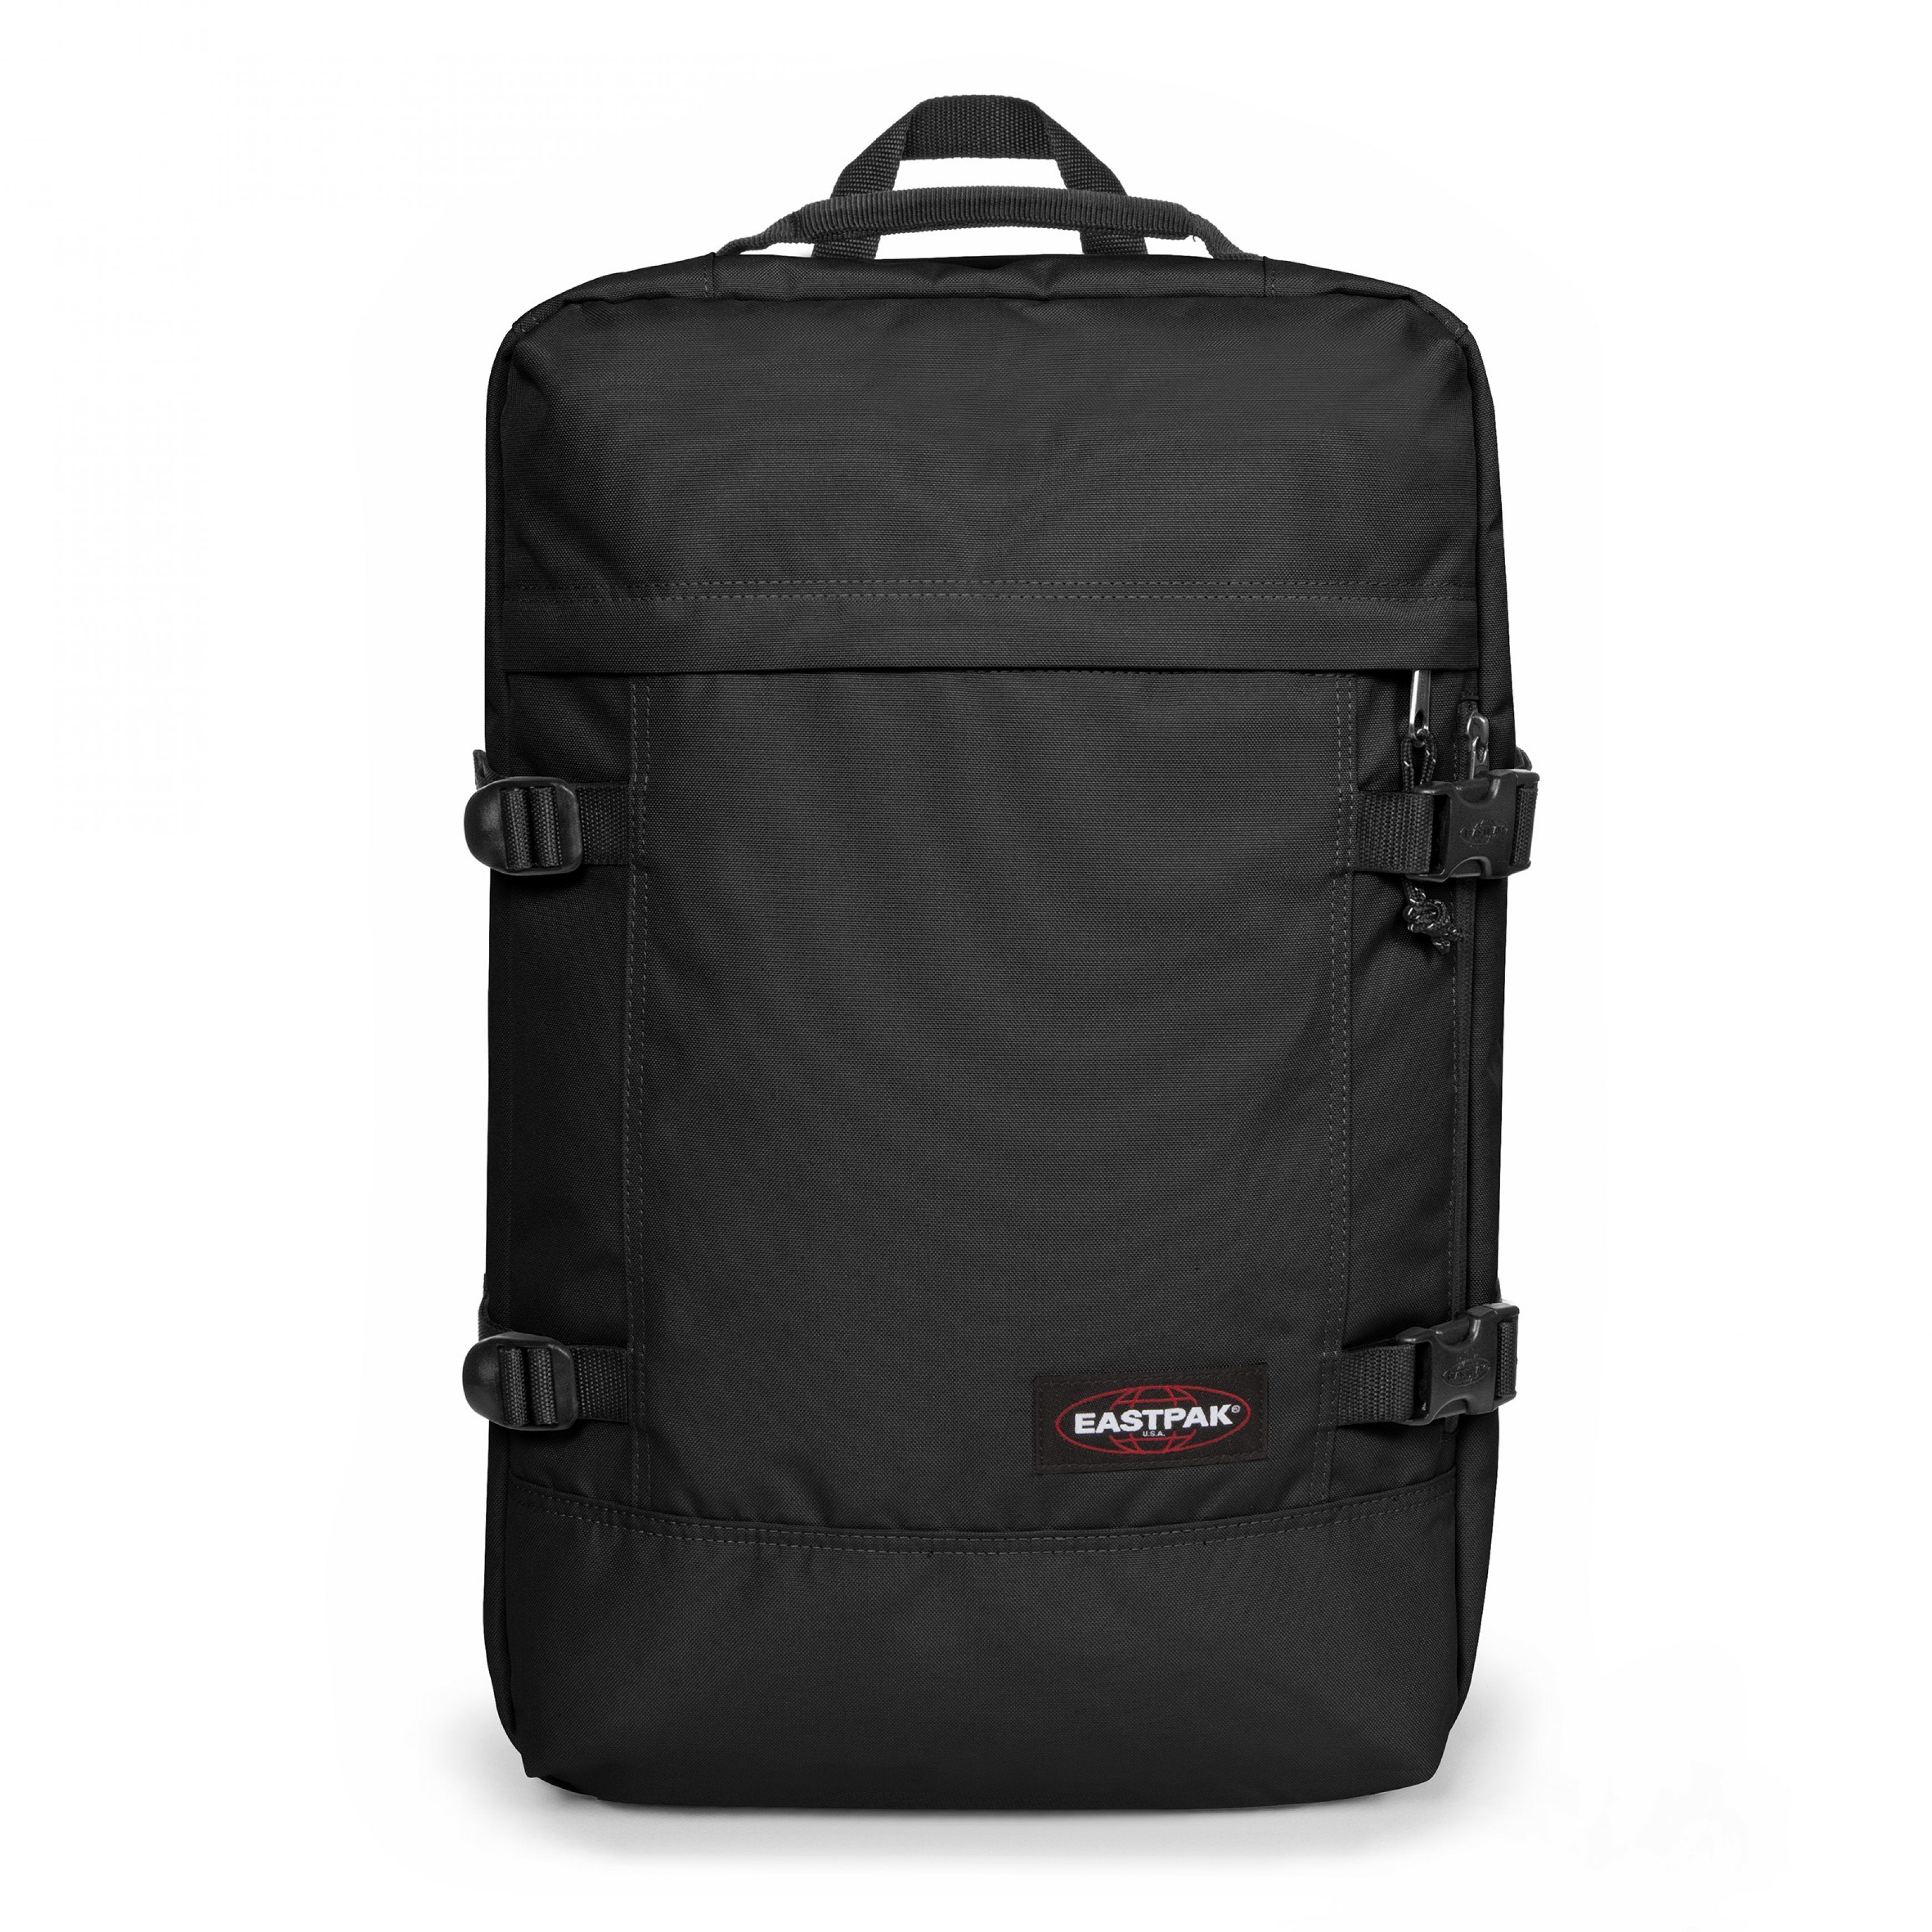 EASTPAK-Travelpack-Large backpack with laptop sleeve-Black-EK0A5BBR0081